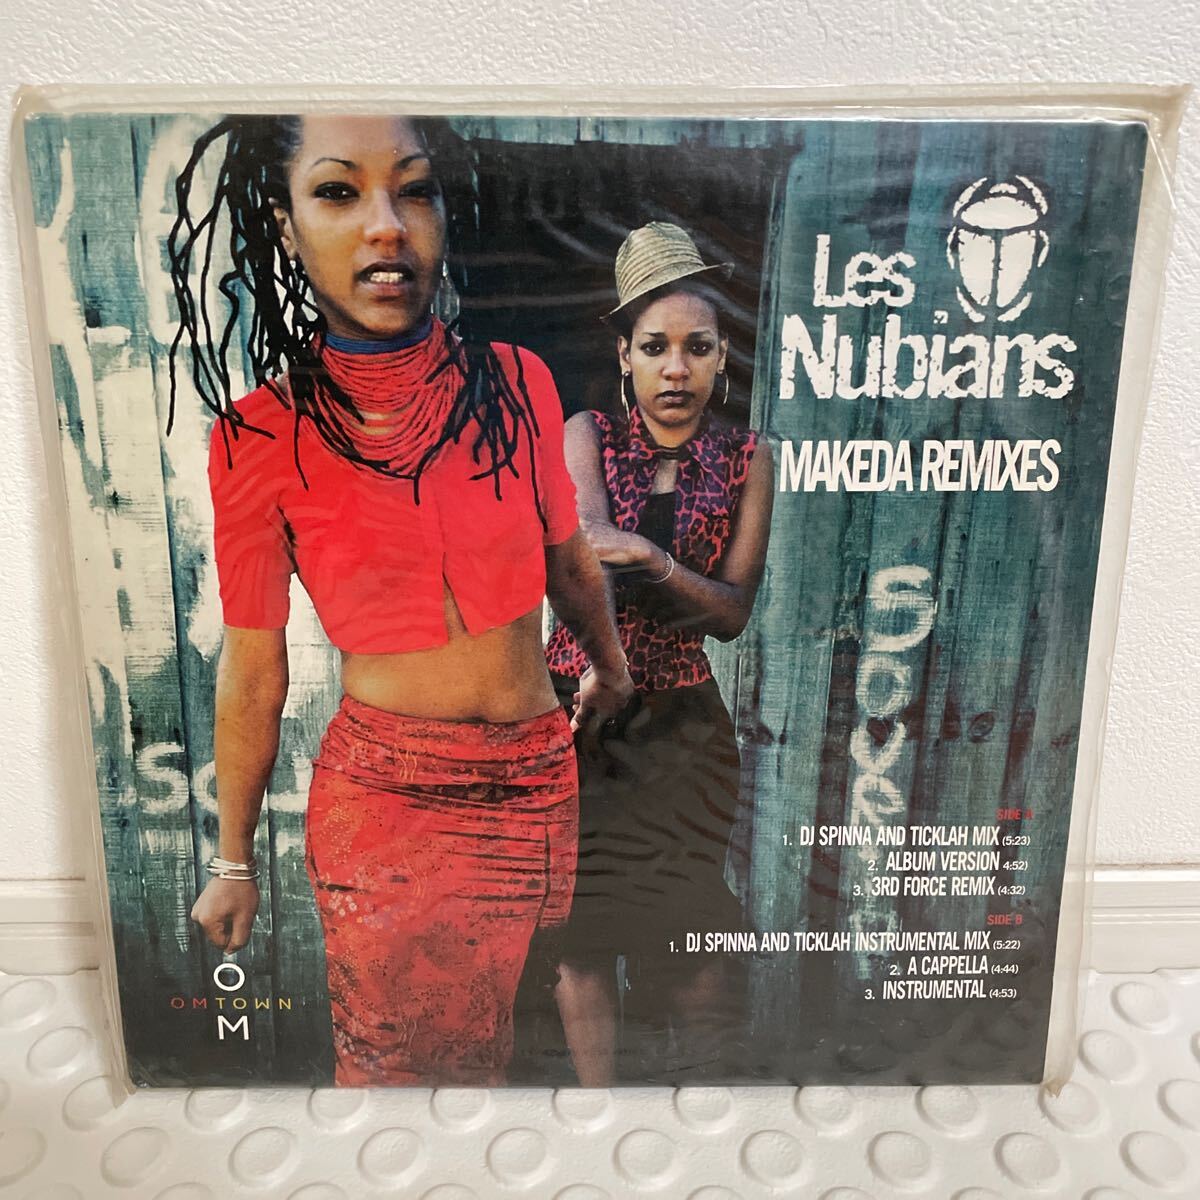 Les Nubians Makeda (Remixes) / dj spinna https://youtu.be/bk0cAATs0_4?si=VJb46ca2Gyp8EWOoの画像1